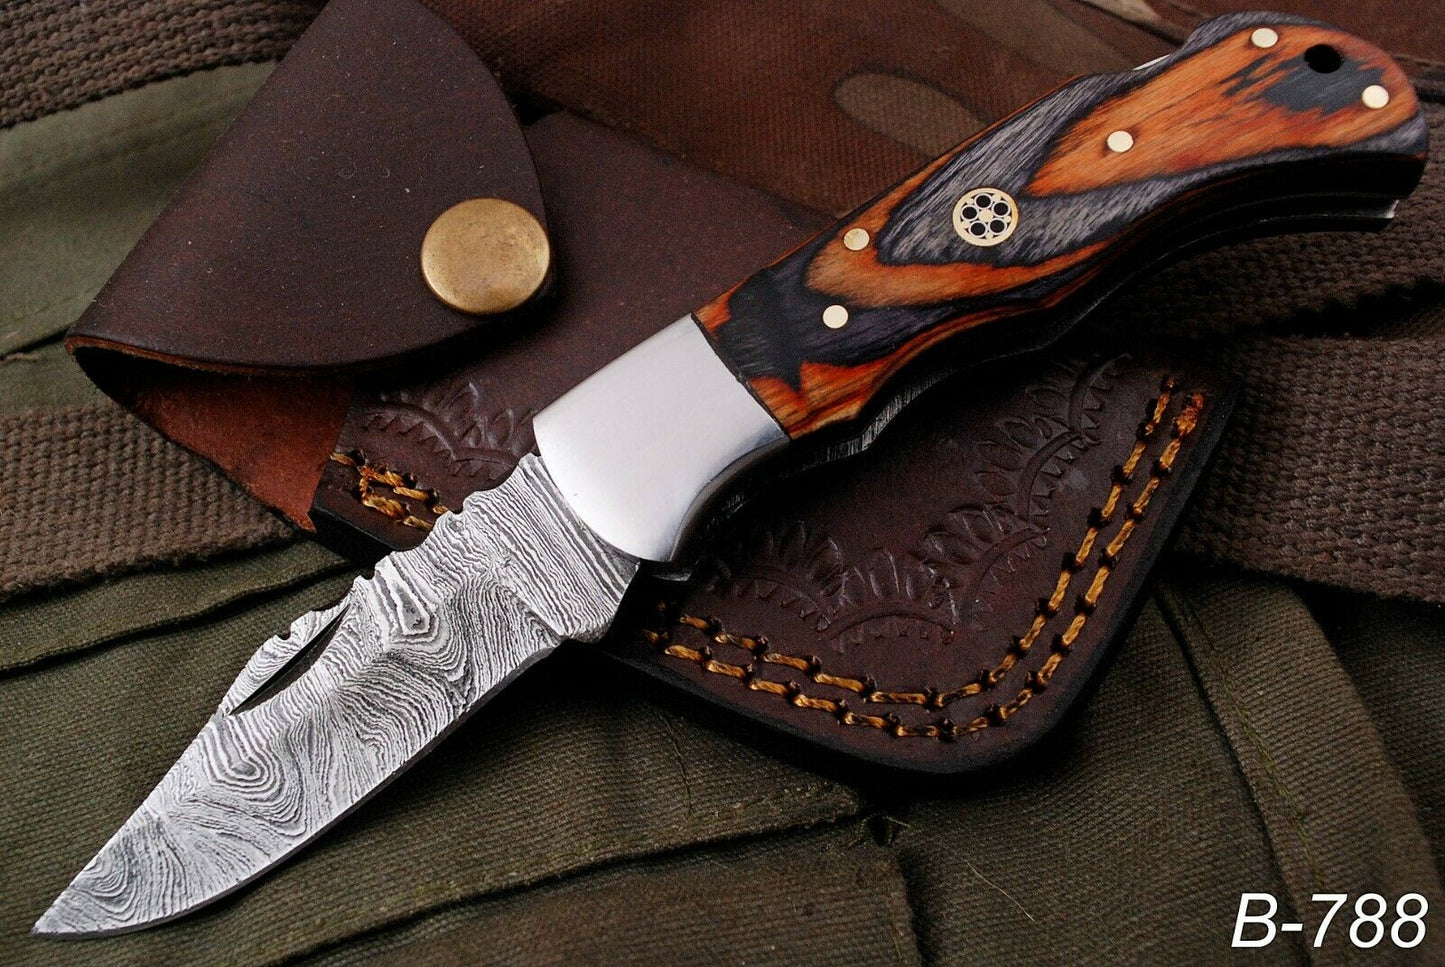 HAND FORGED DAMSACUS Steel Lockback Folding Pocket Knife Multicolor Wood Handle